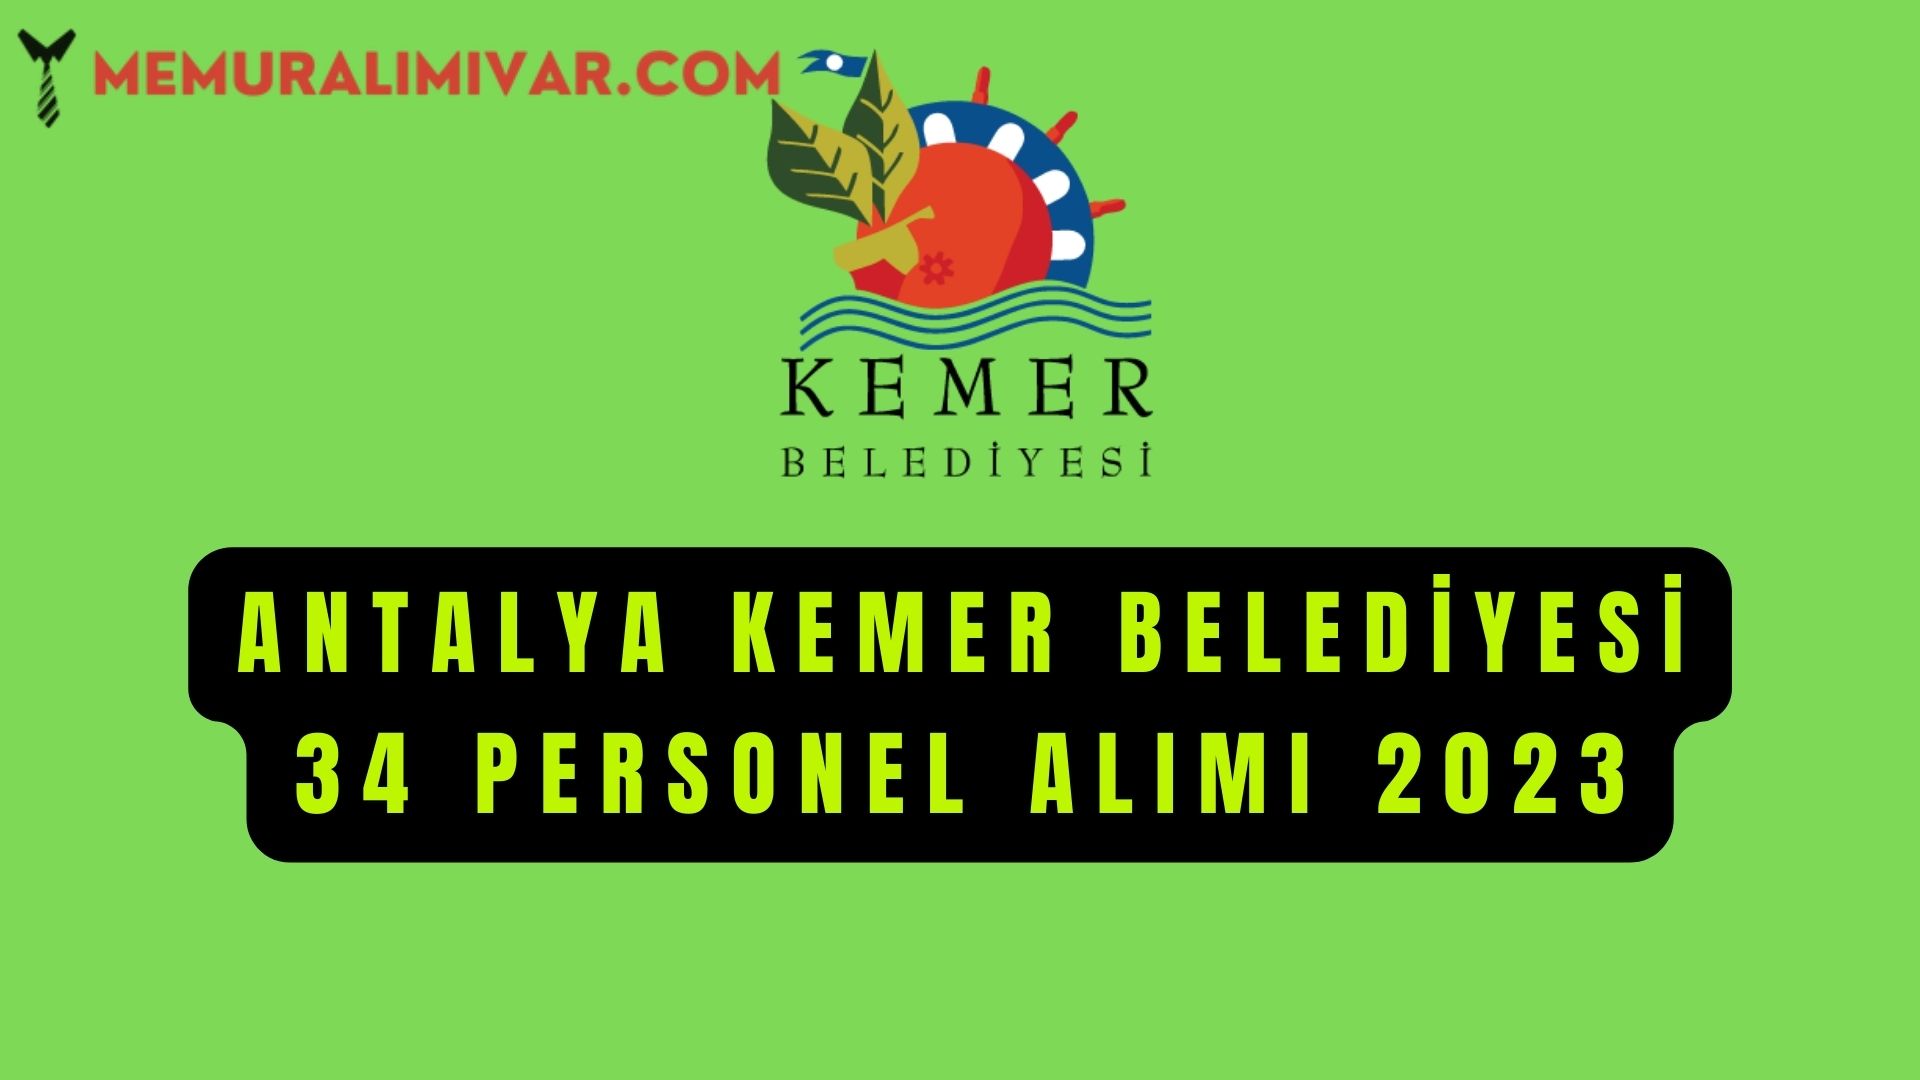 Antalya Kemer Belediyesi 34 Personel Alımı 2023 Başvuru Sayfası ve Formu